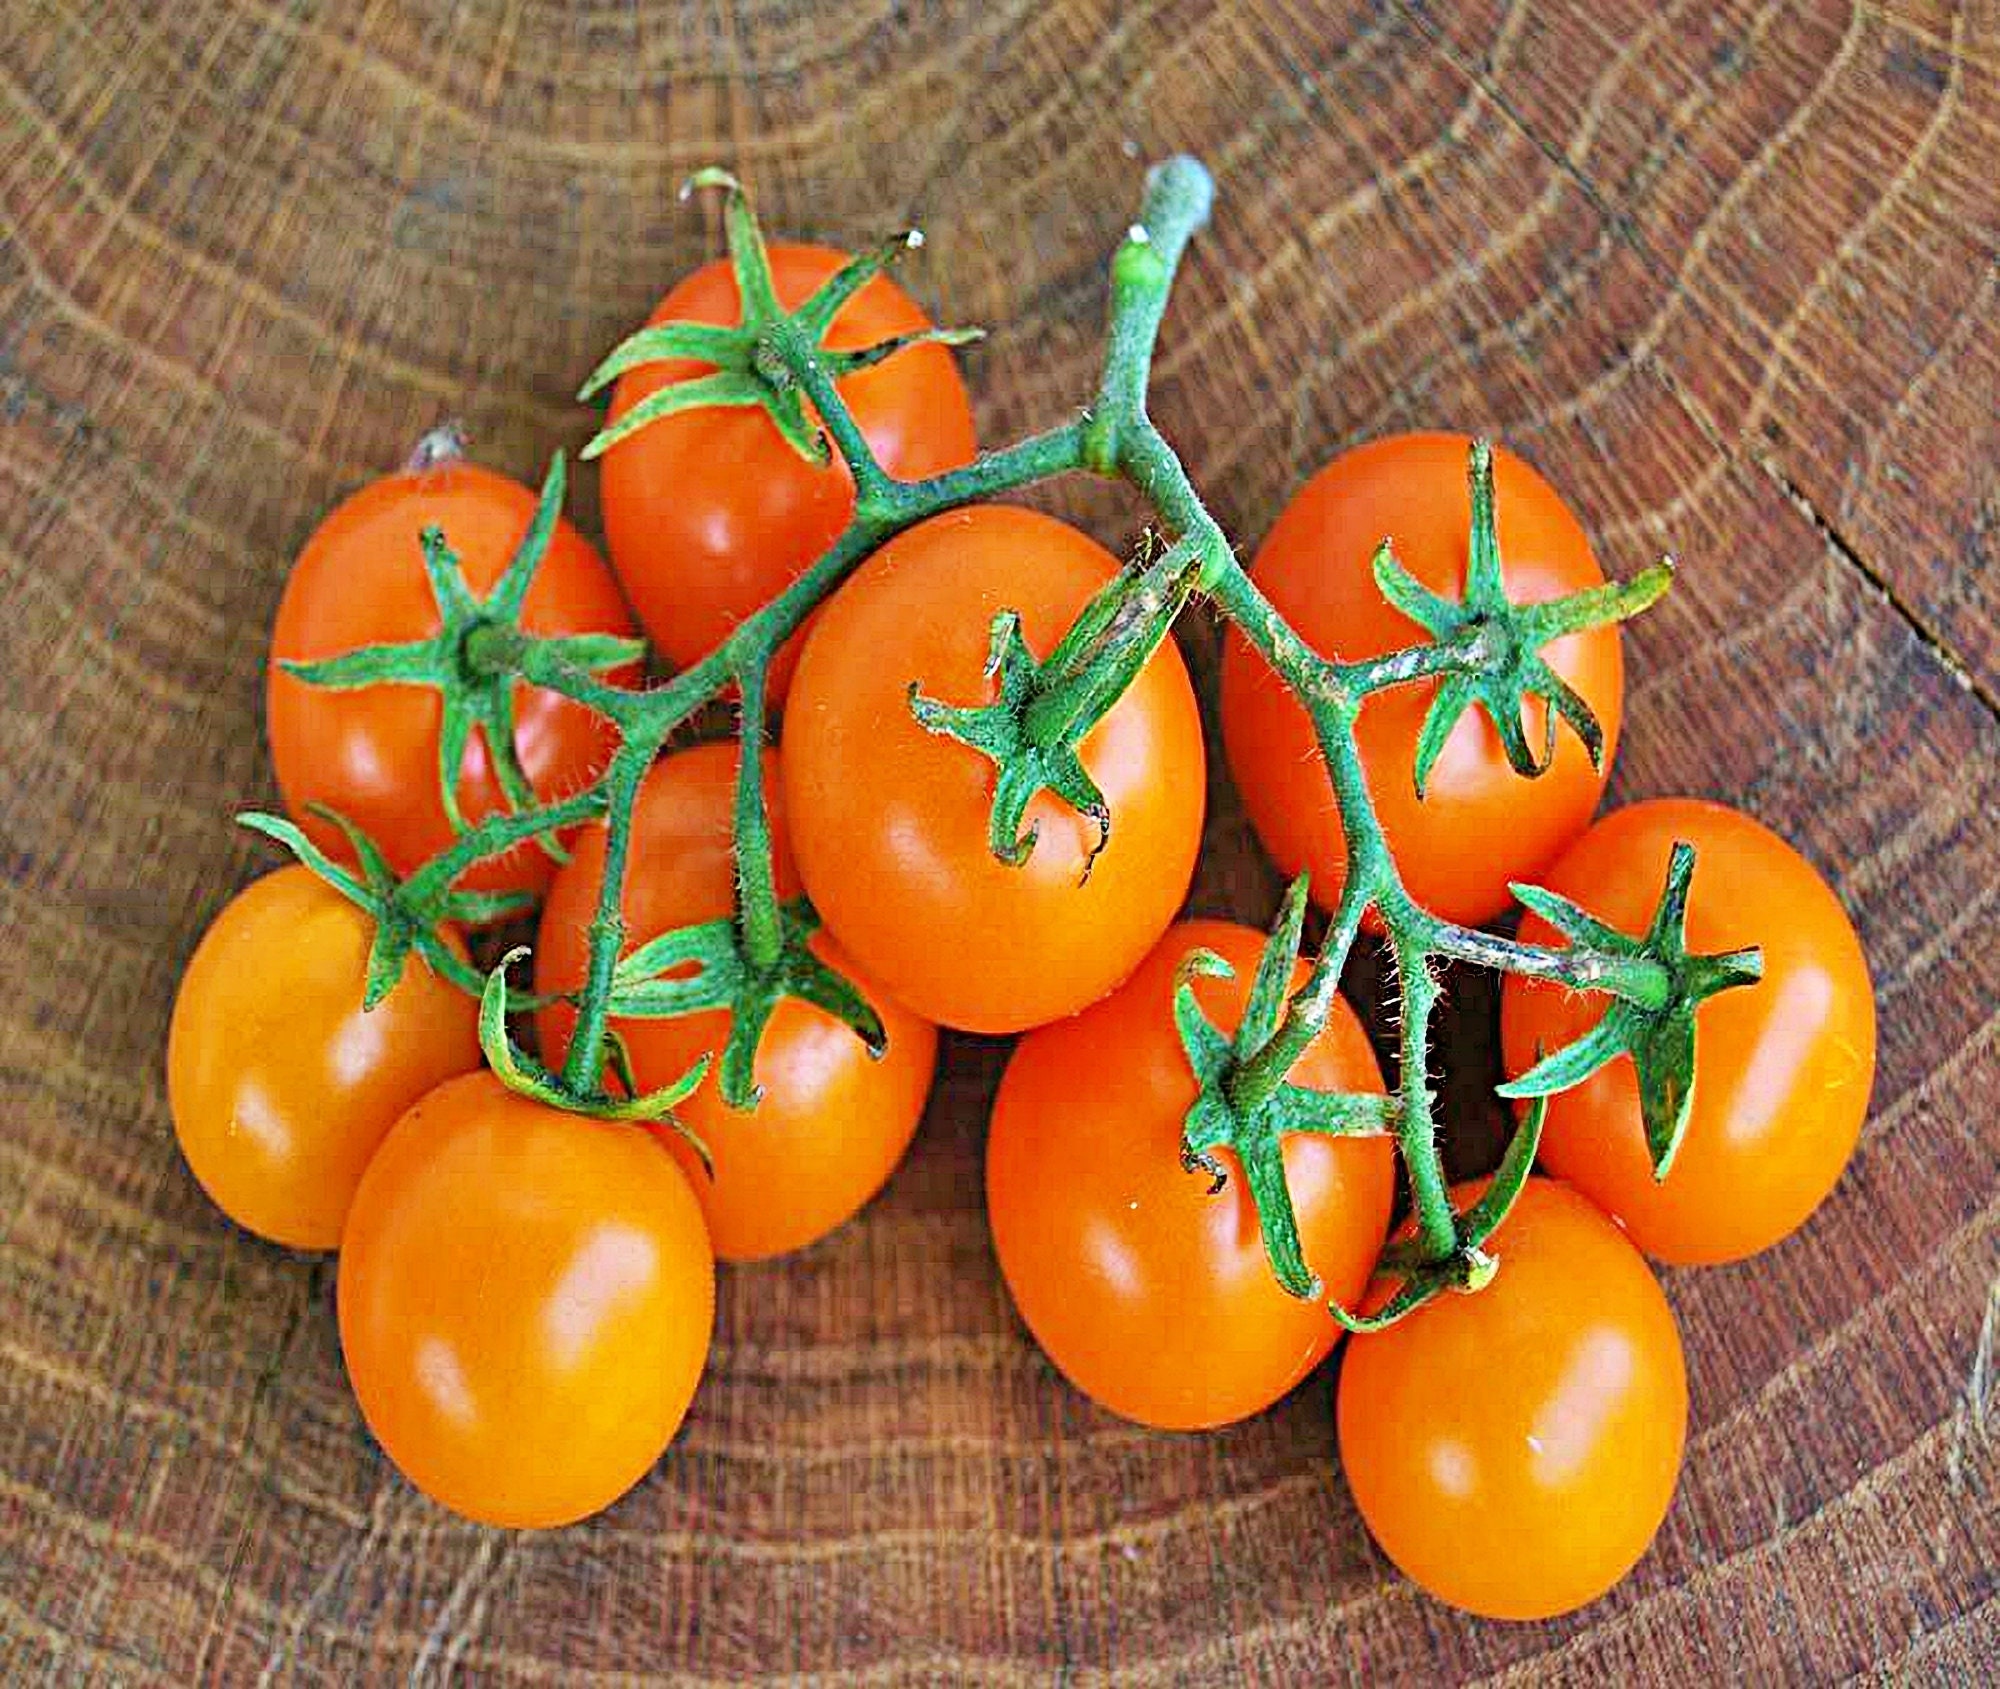 Sweet Orange Cherry Tomato Seeds Non Gmo 30 Seeds Heirloom Etsy